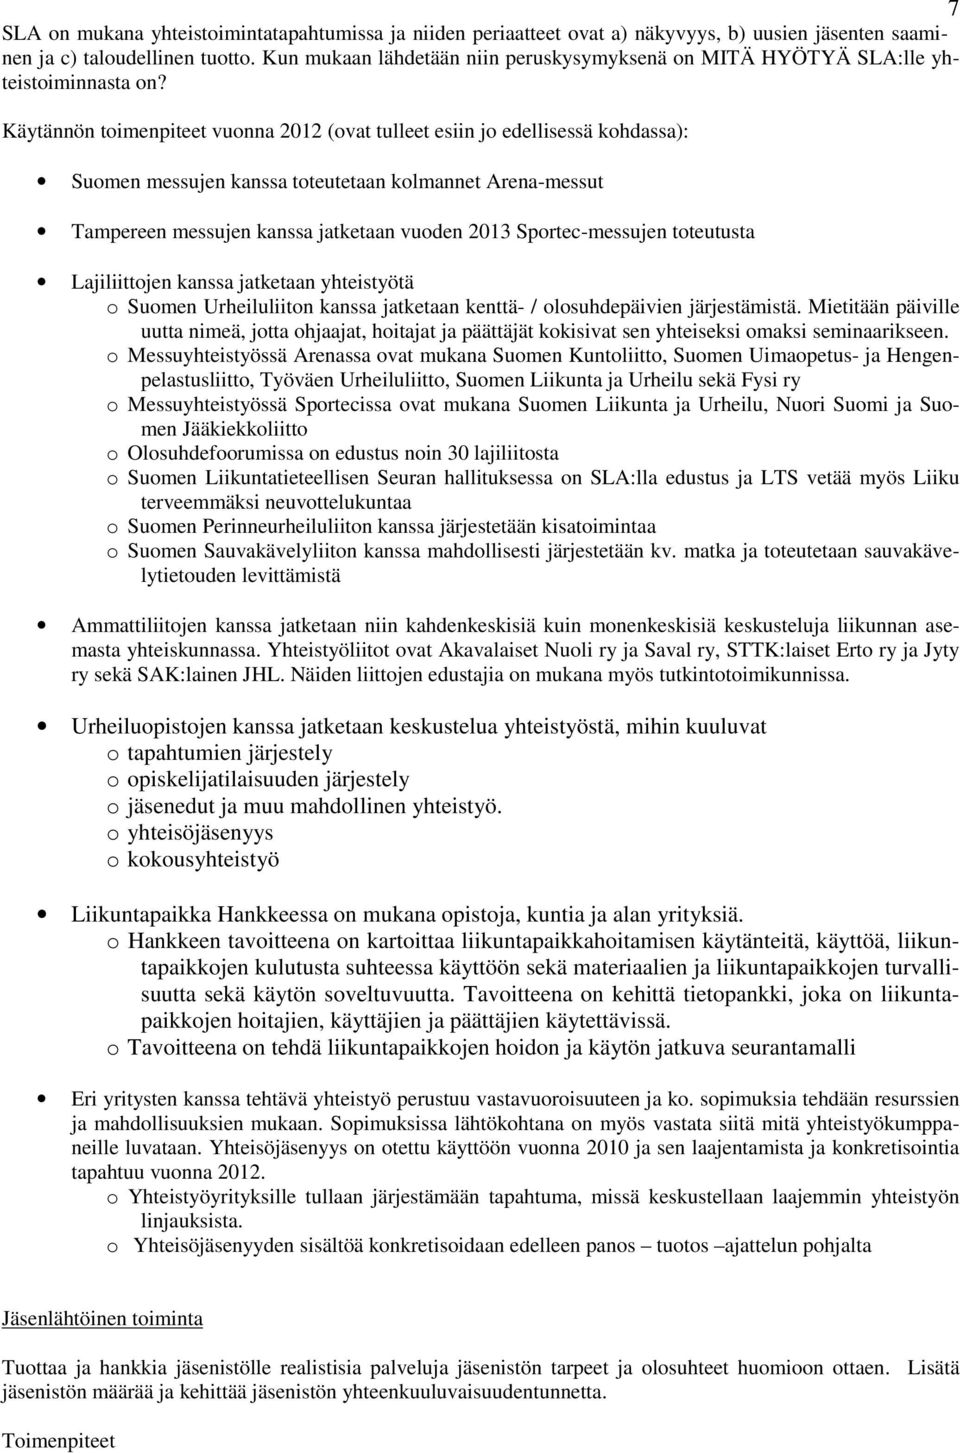 Käytännön toimenpiteet vuonna 2012 (ovat tulleet esiin jo edellisessä kohdassa): Suomen messujen kanssa toteutetaan kolmannet Arena-messut Tampereen messujen kanssa jatketaan vuoden 2013